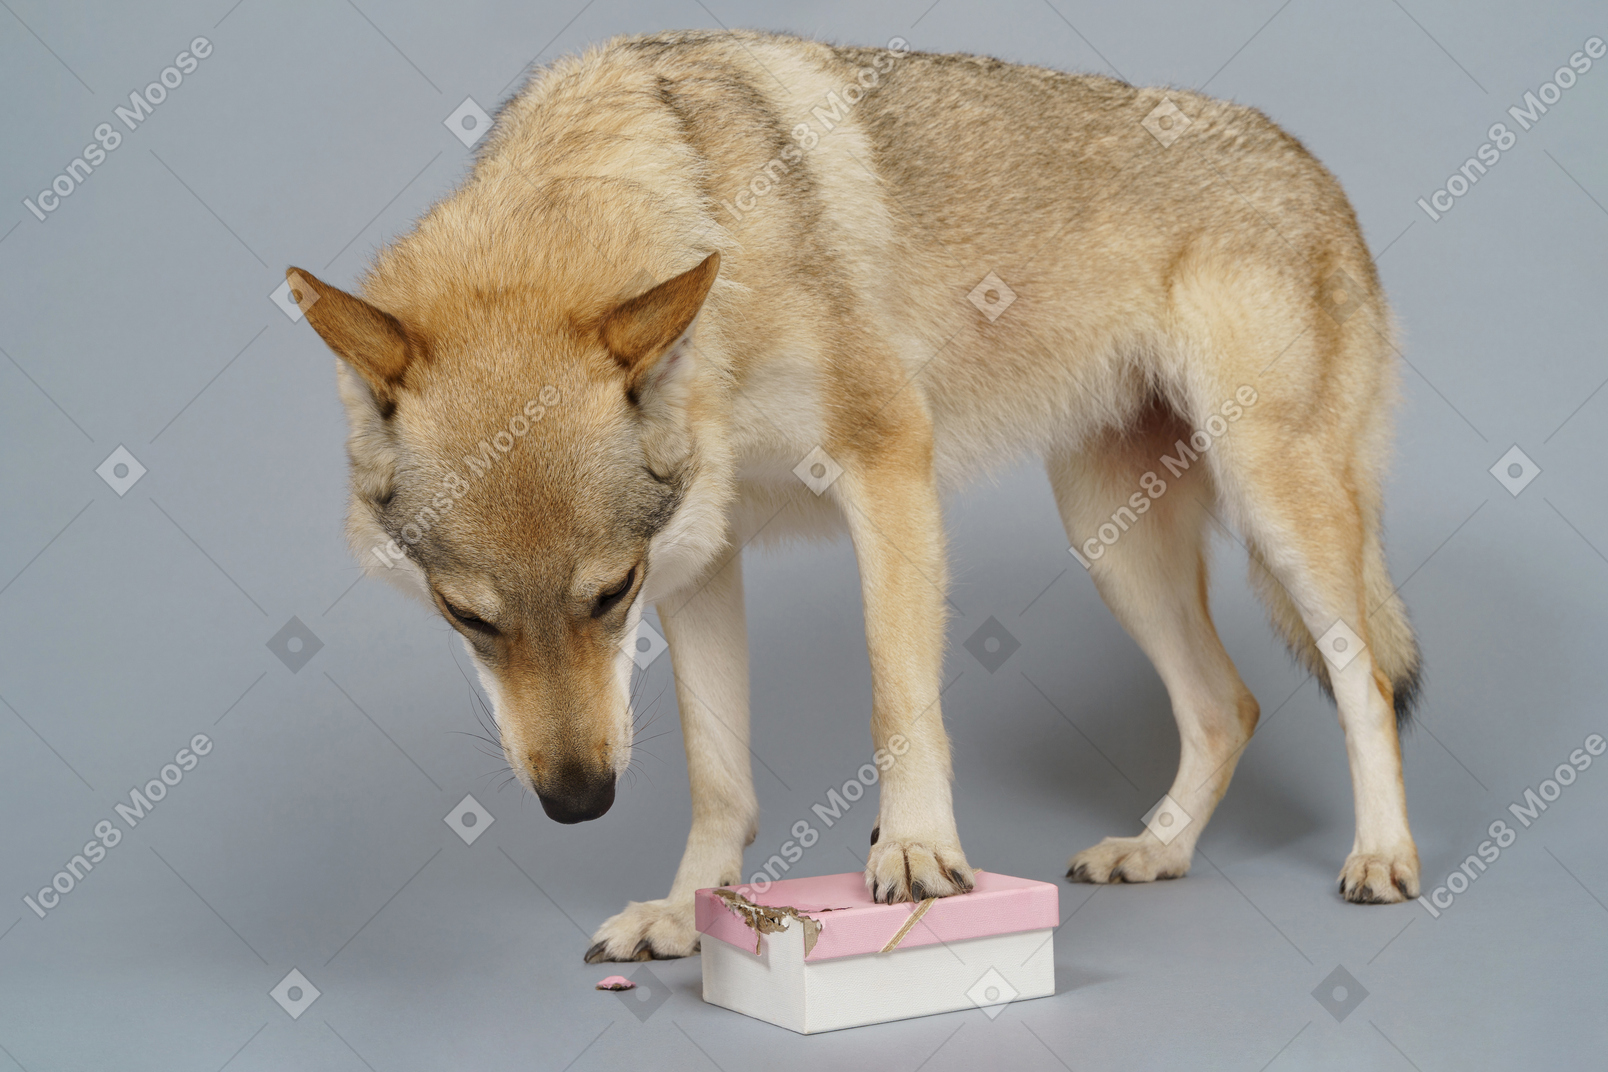 상자에서 무언가를 찾는 늑대와 같은 개 전체 길이